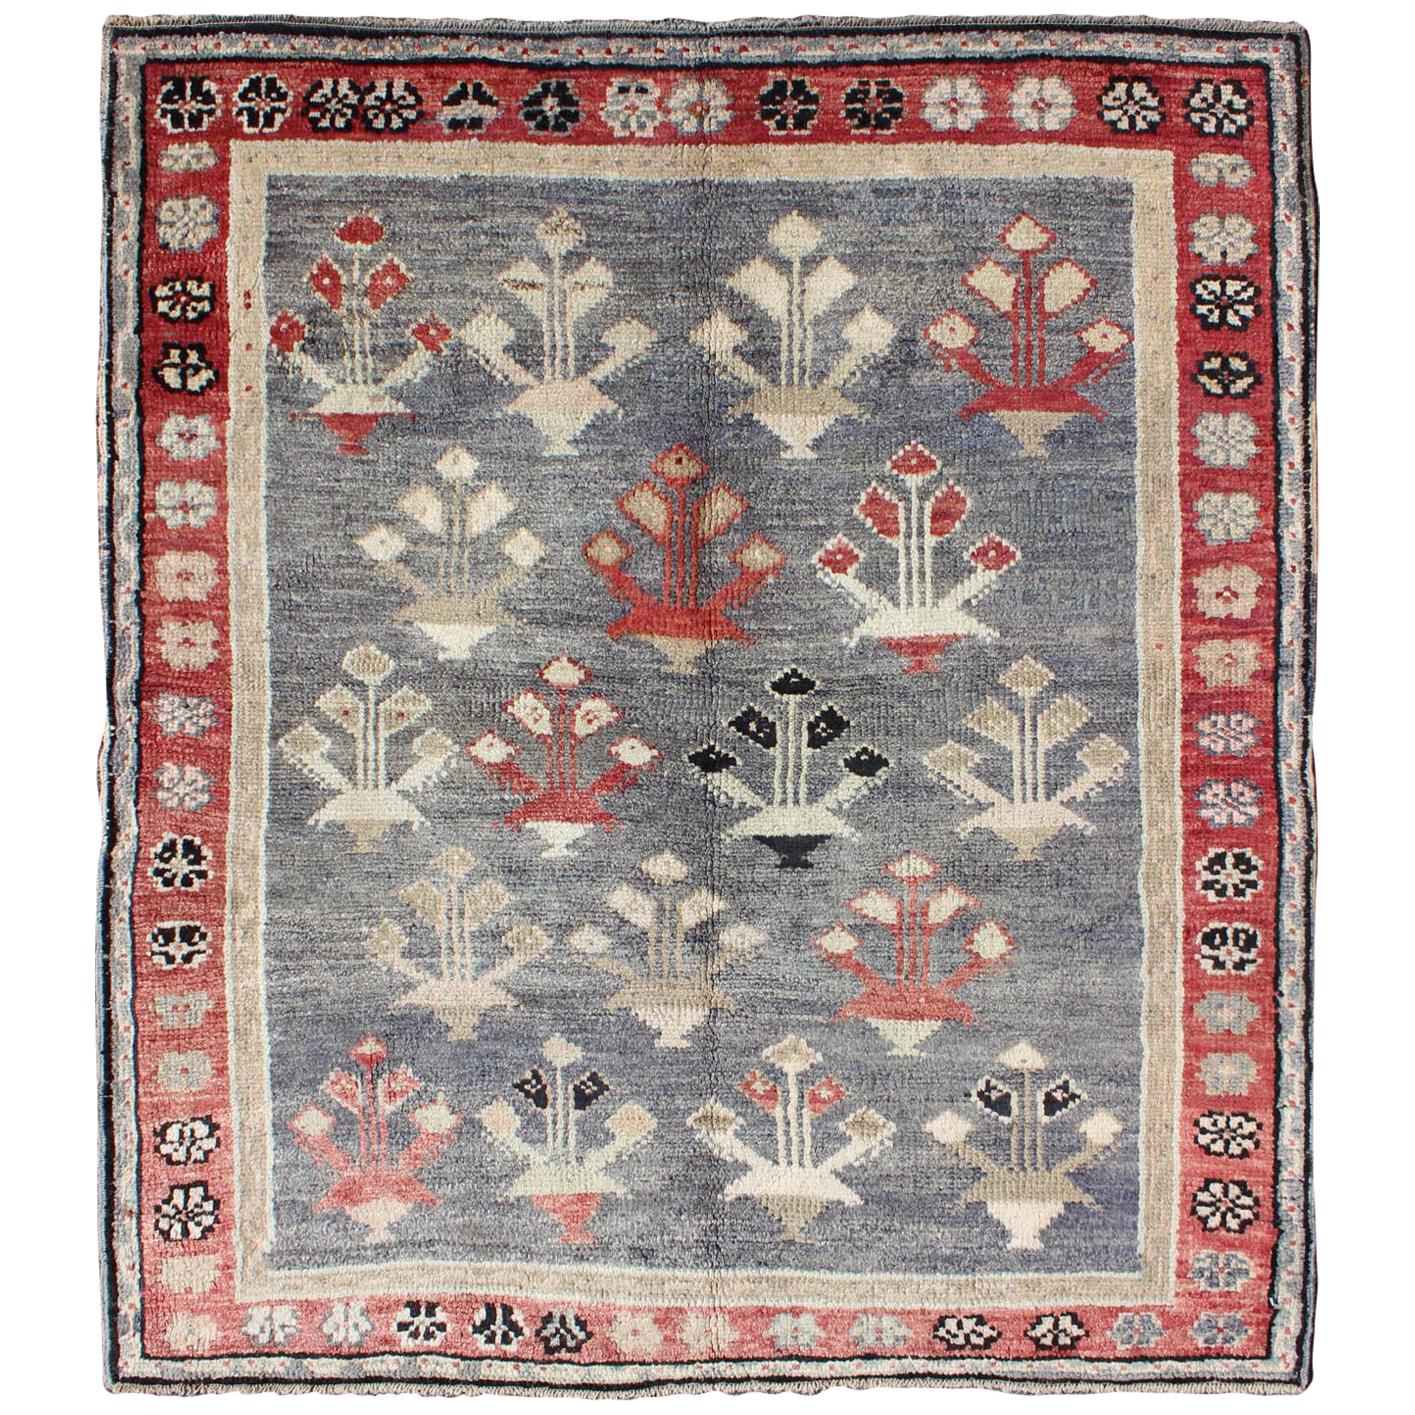 Türkischer Oushak-Teppich im Vintage-Stil in Rot, Grau, Blau-Grau, Taupe und Elfenbein